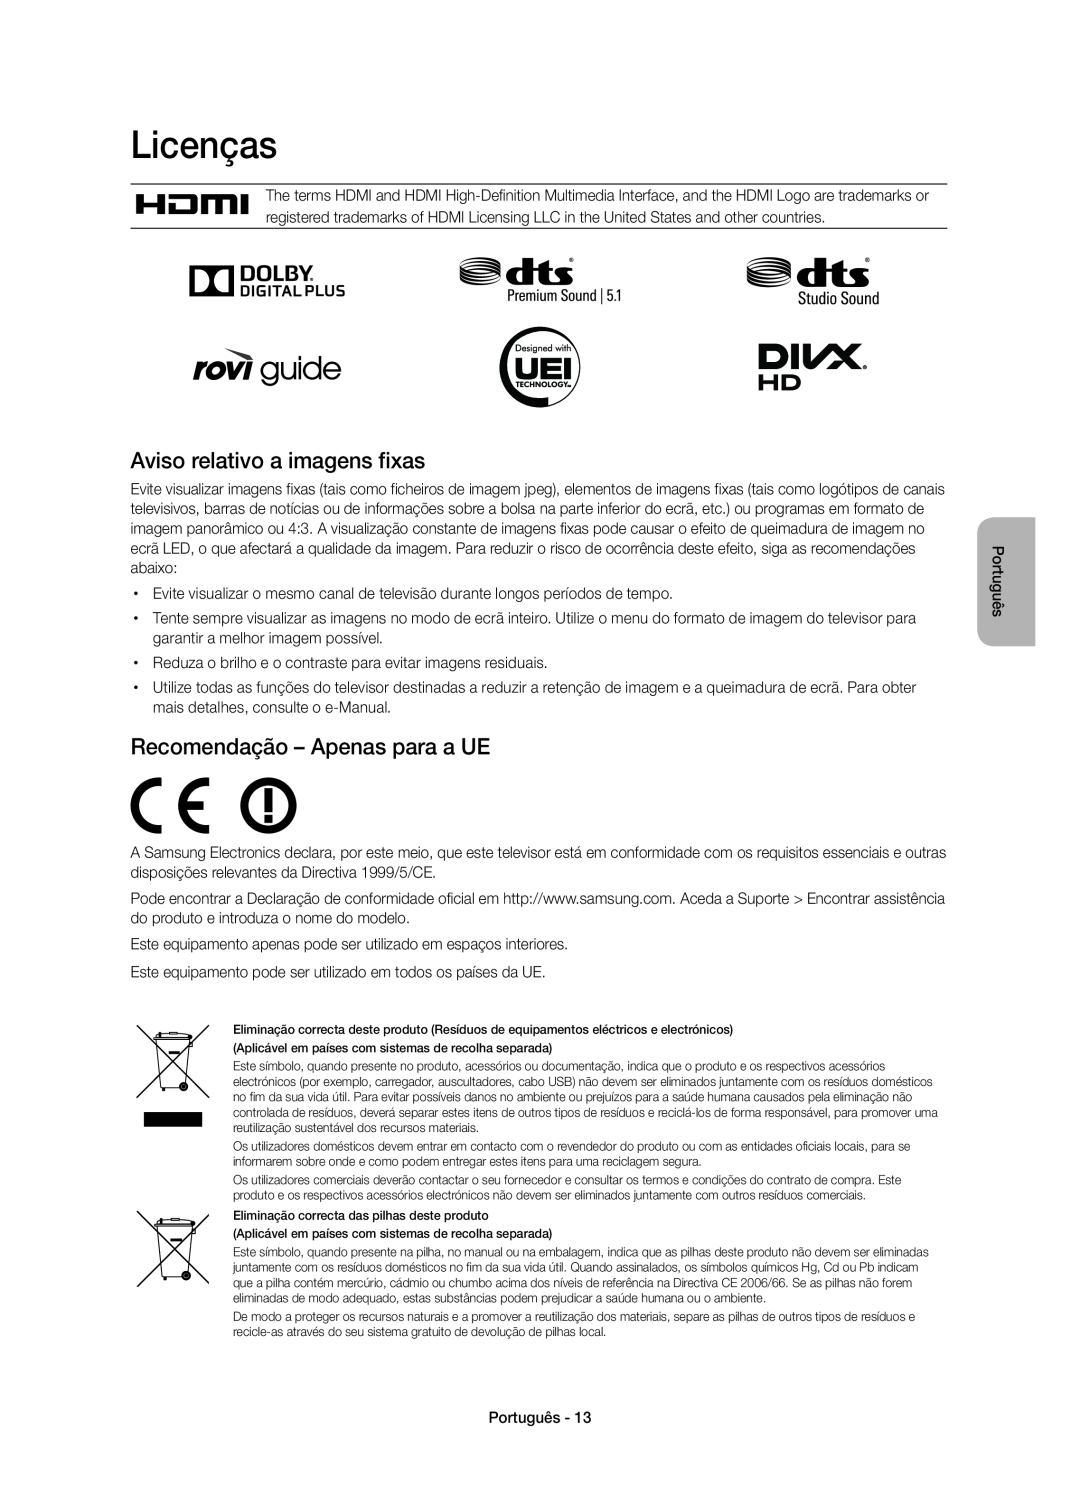 Samsung UE75H6400AWXXH manual Licenças, Aviso relativo a imagens fixas, Recomendação - Apenas para a UE, Português 